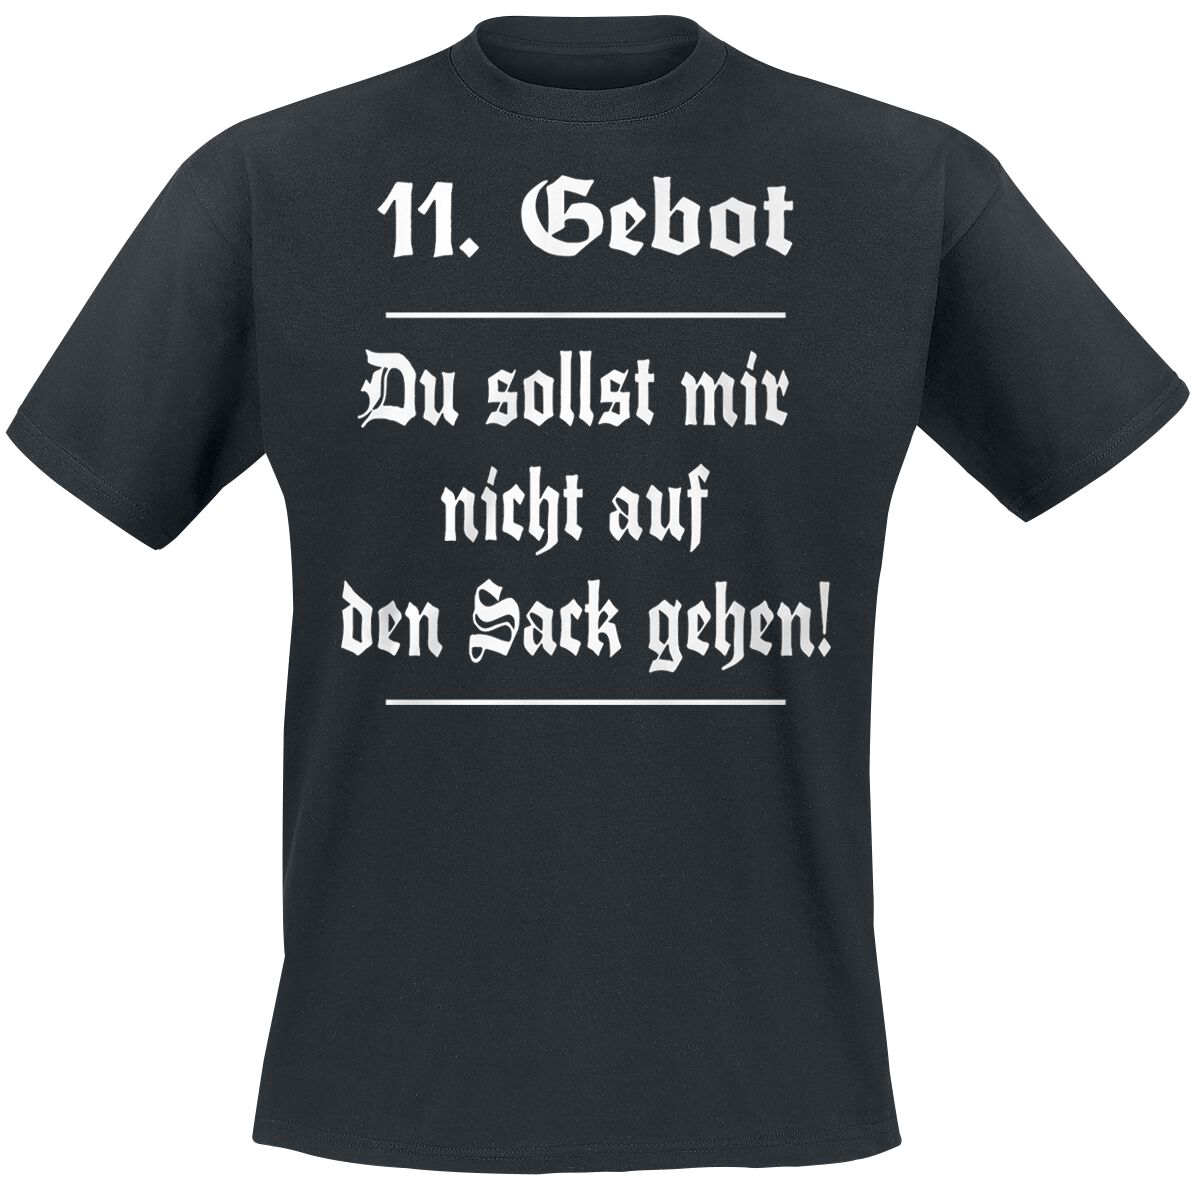 Image of Sprüche 11. Gebot T-Shirt schwarz